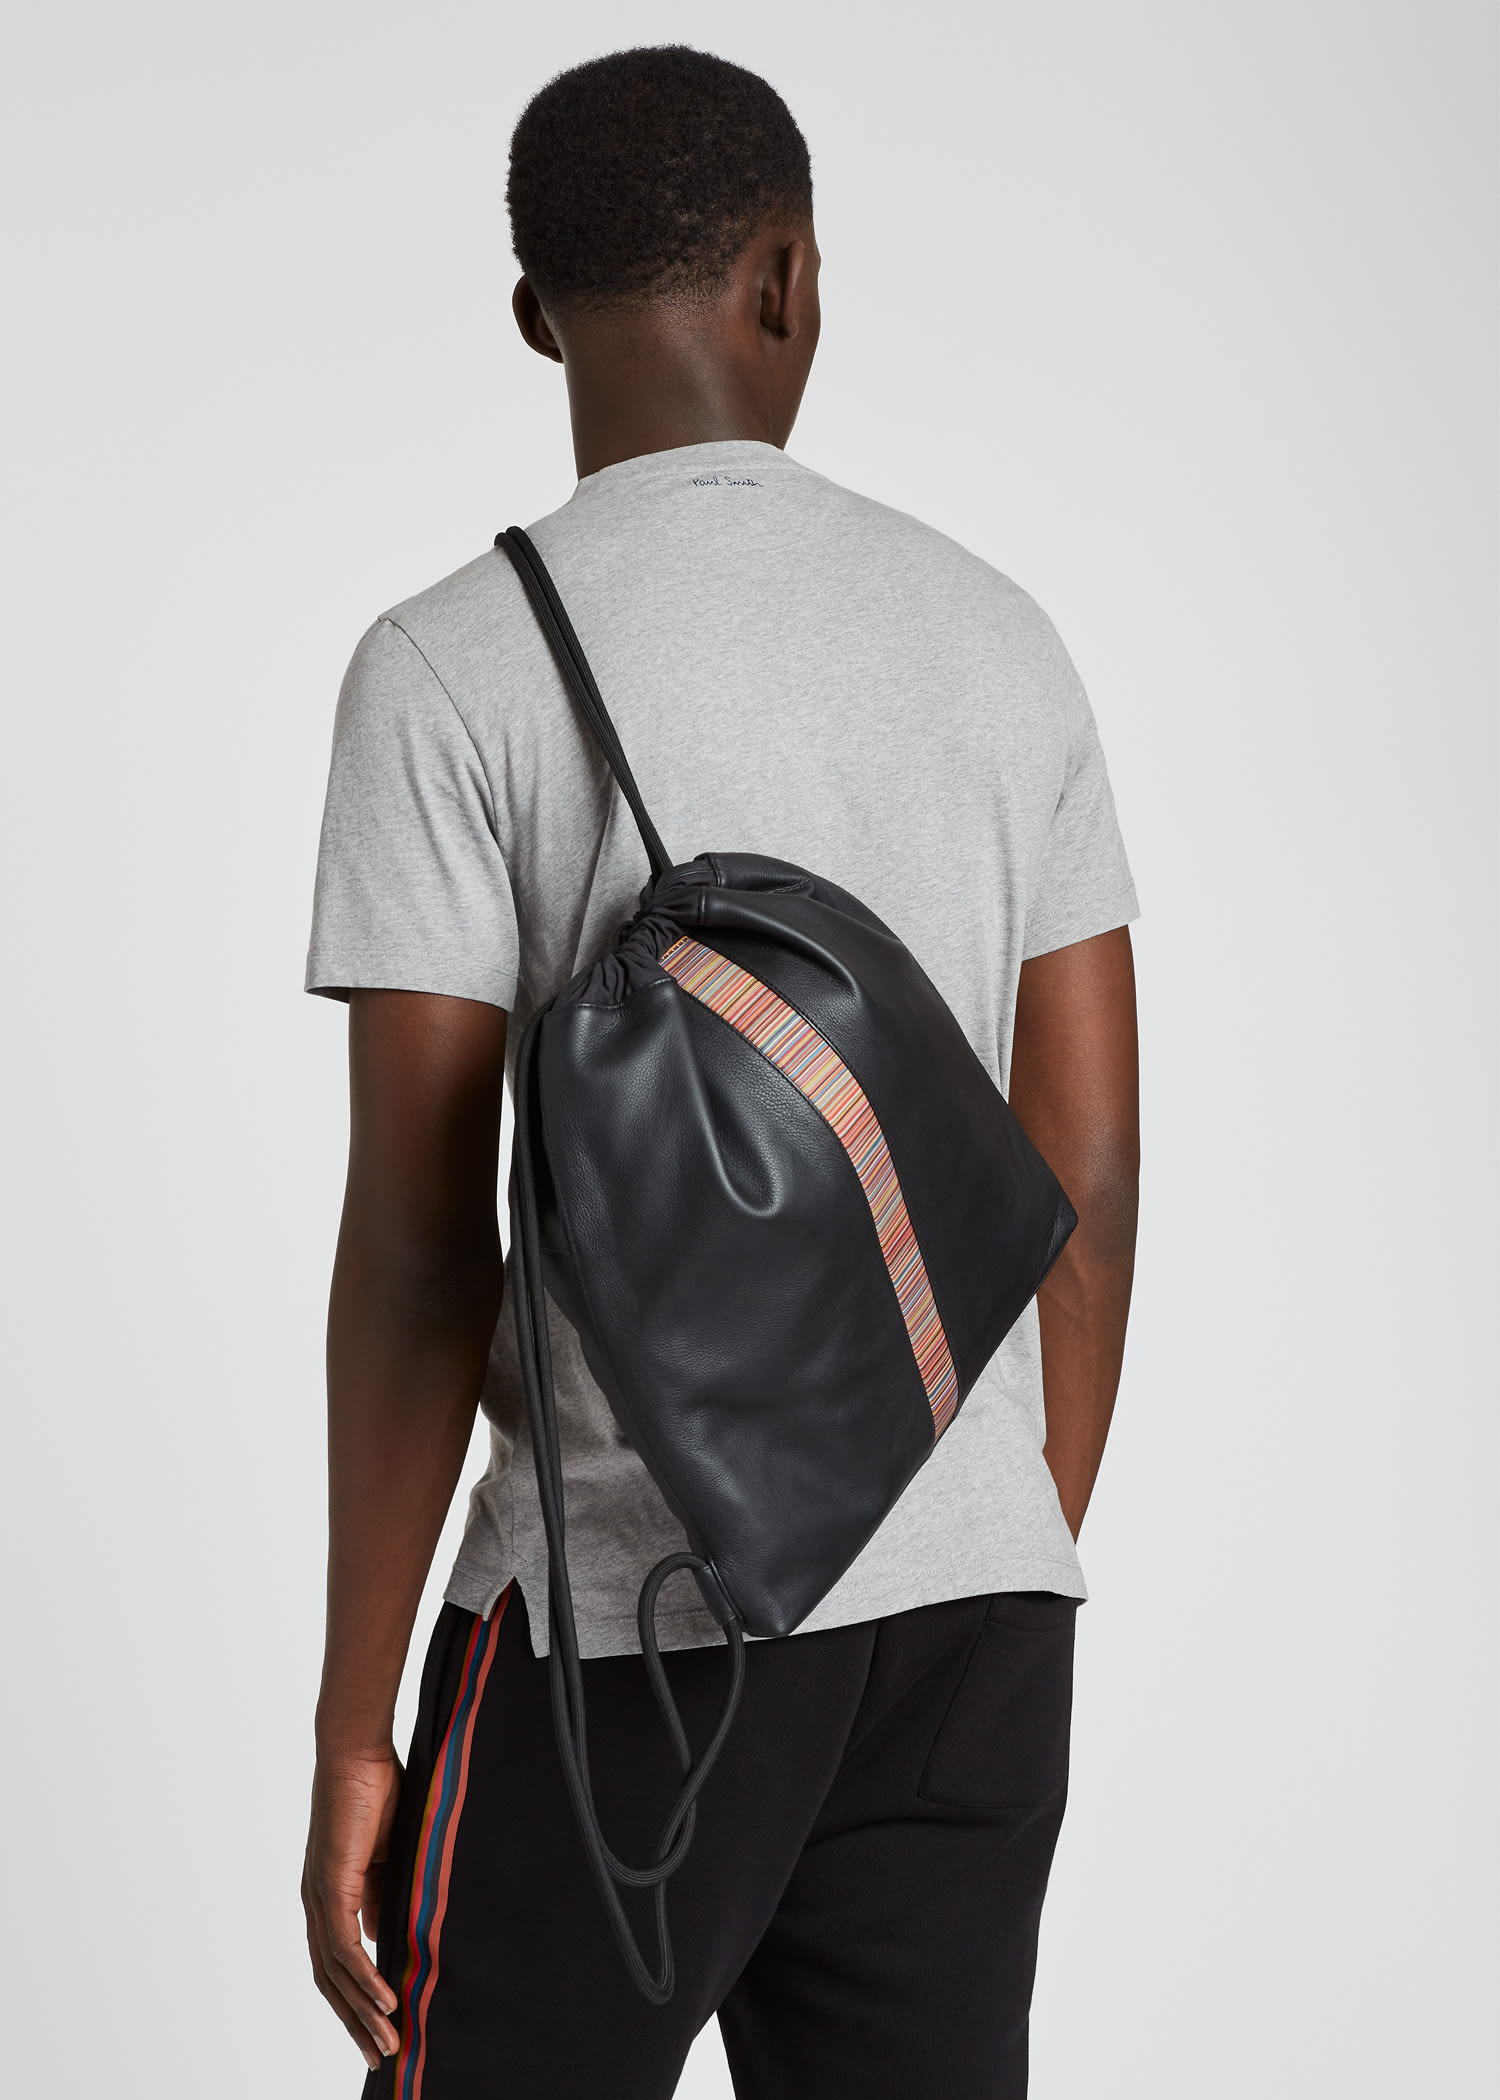 Drawstring Backpack Stripes Shoulder Bags 